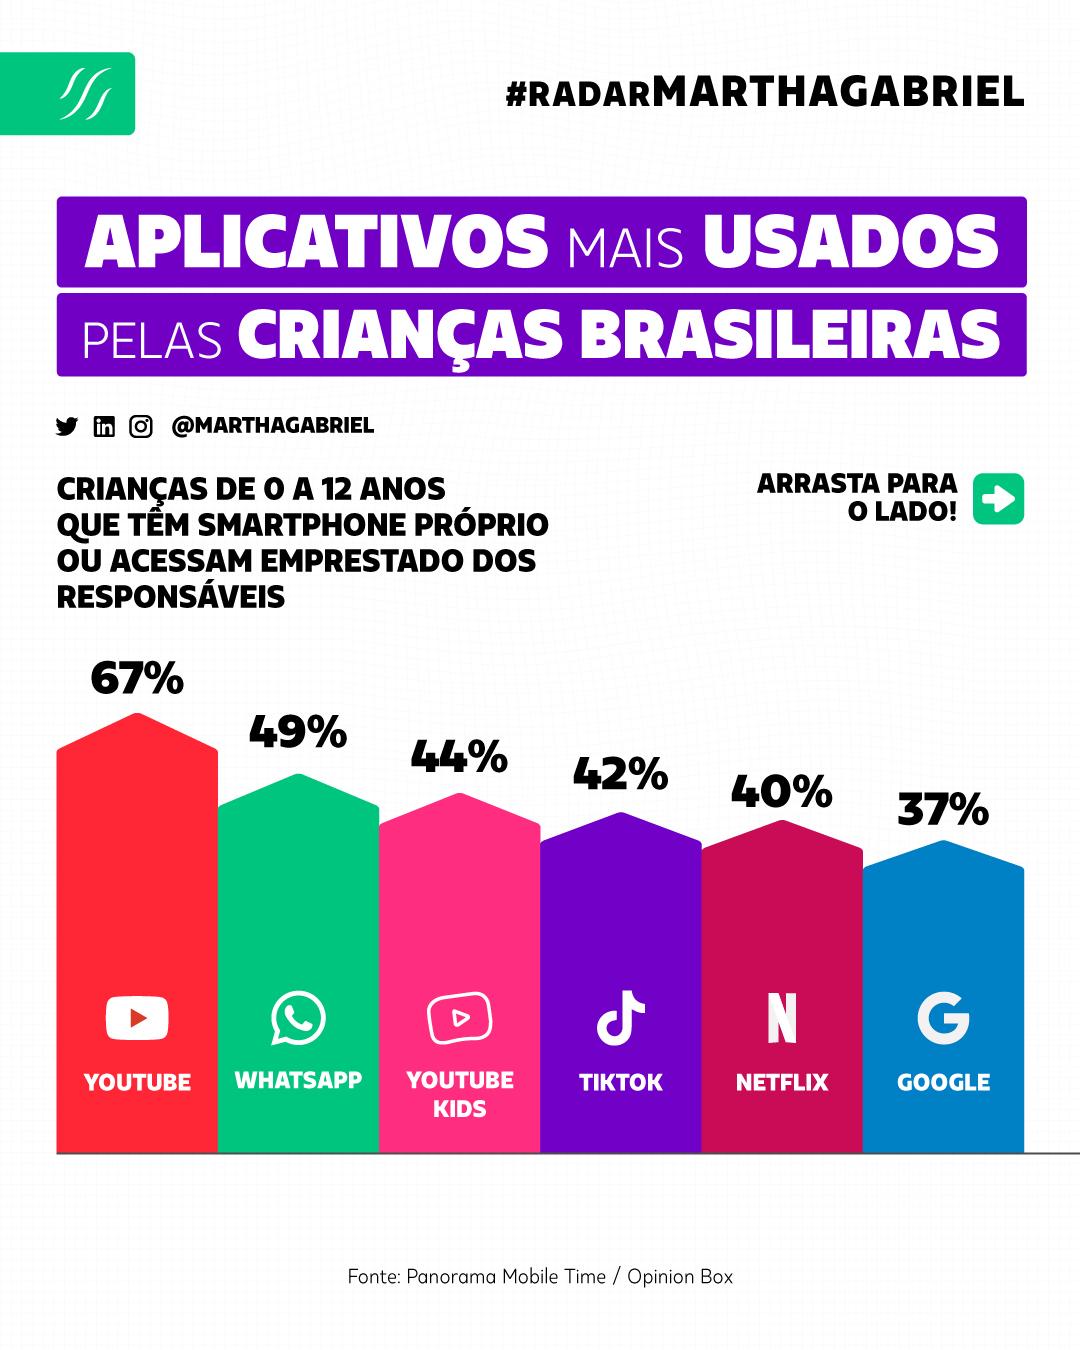 Aplicativos mais usados pelas crianças brasileiras